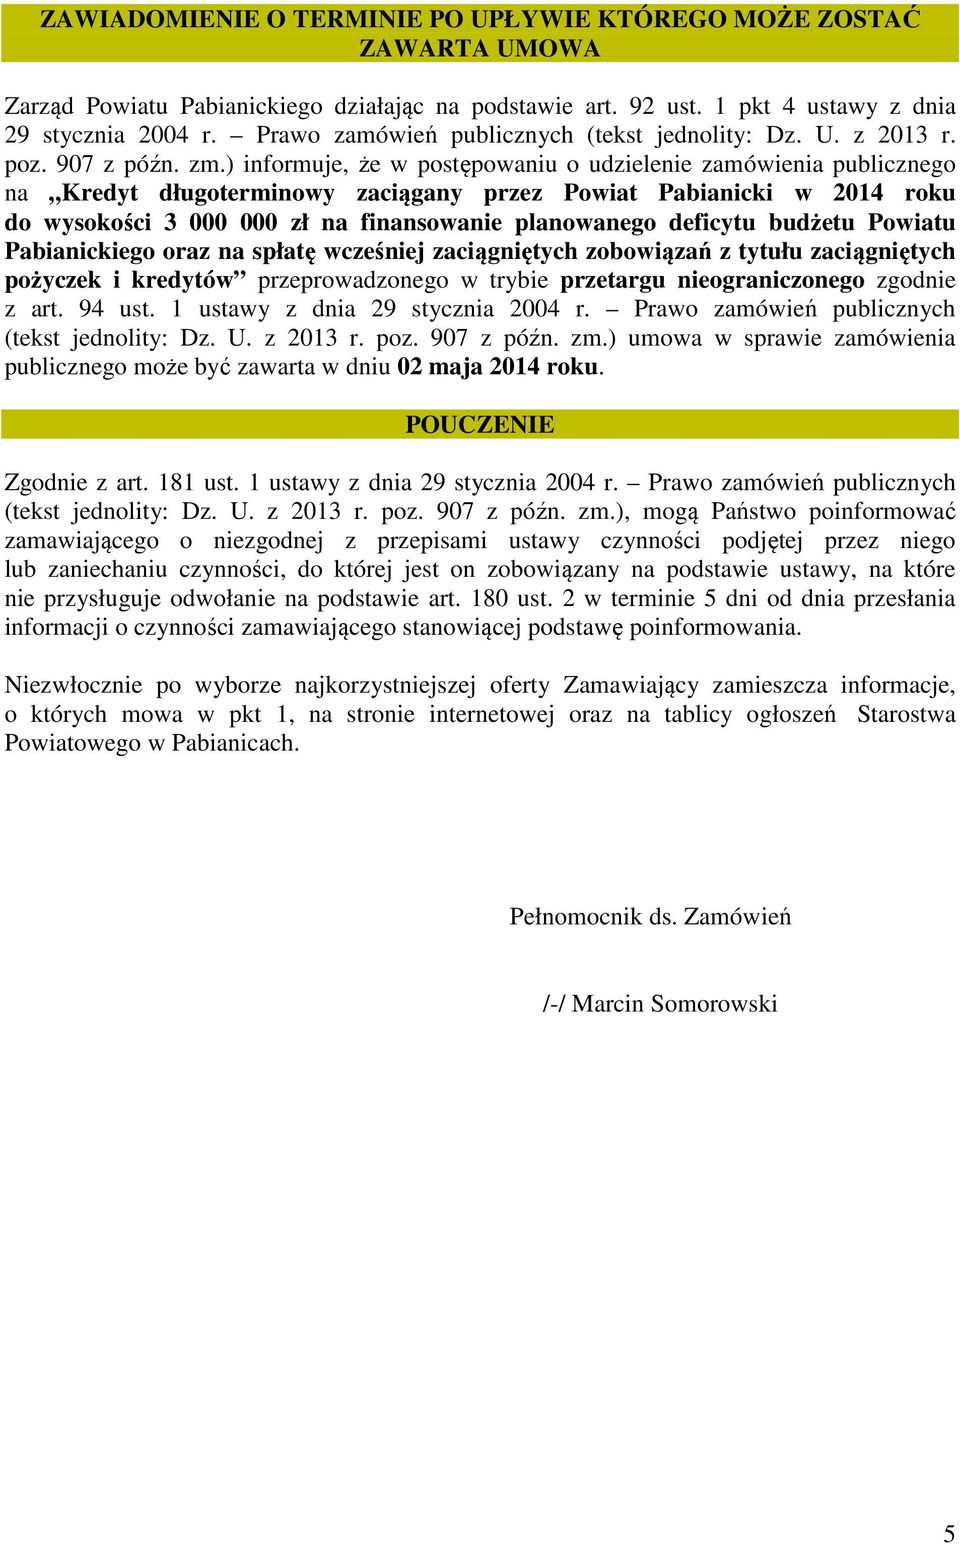 ) informuje, że w postępowaniu o udzielenie zamówienia publicznego na Kredyt długoterminowy zaciągany przez Powiat Pabianicki w 2014 roku do wysokości 3 000 000 zł na finansowanie planowanego